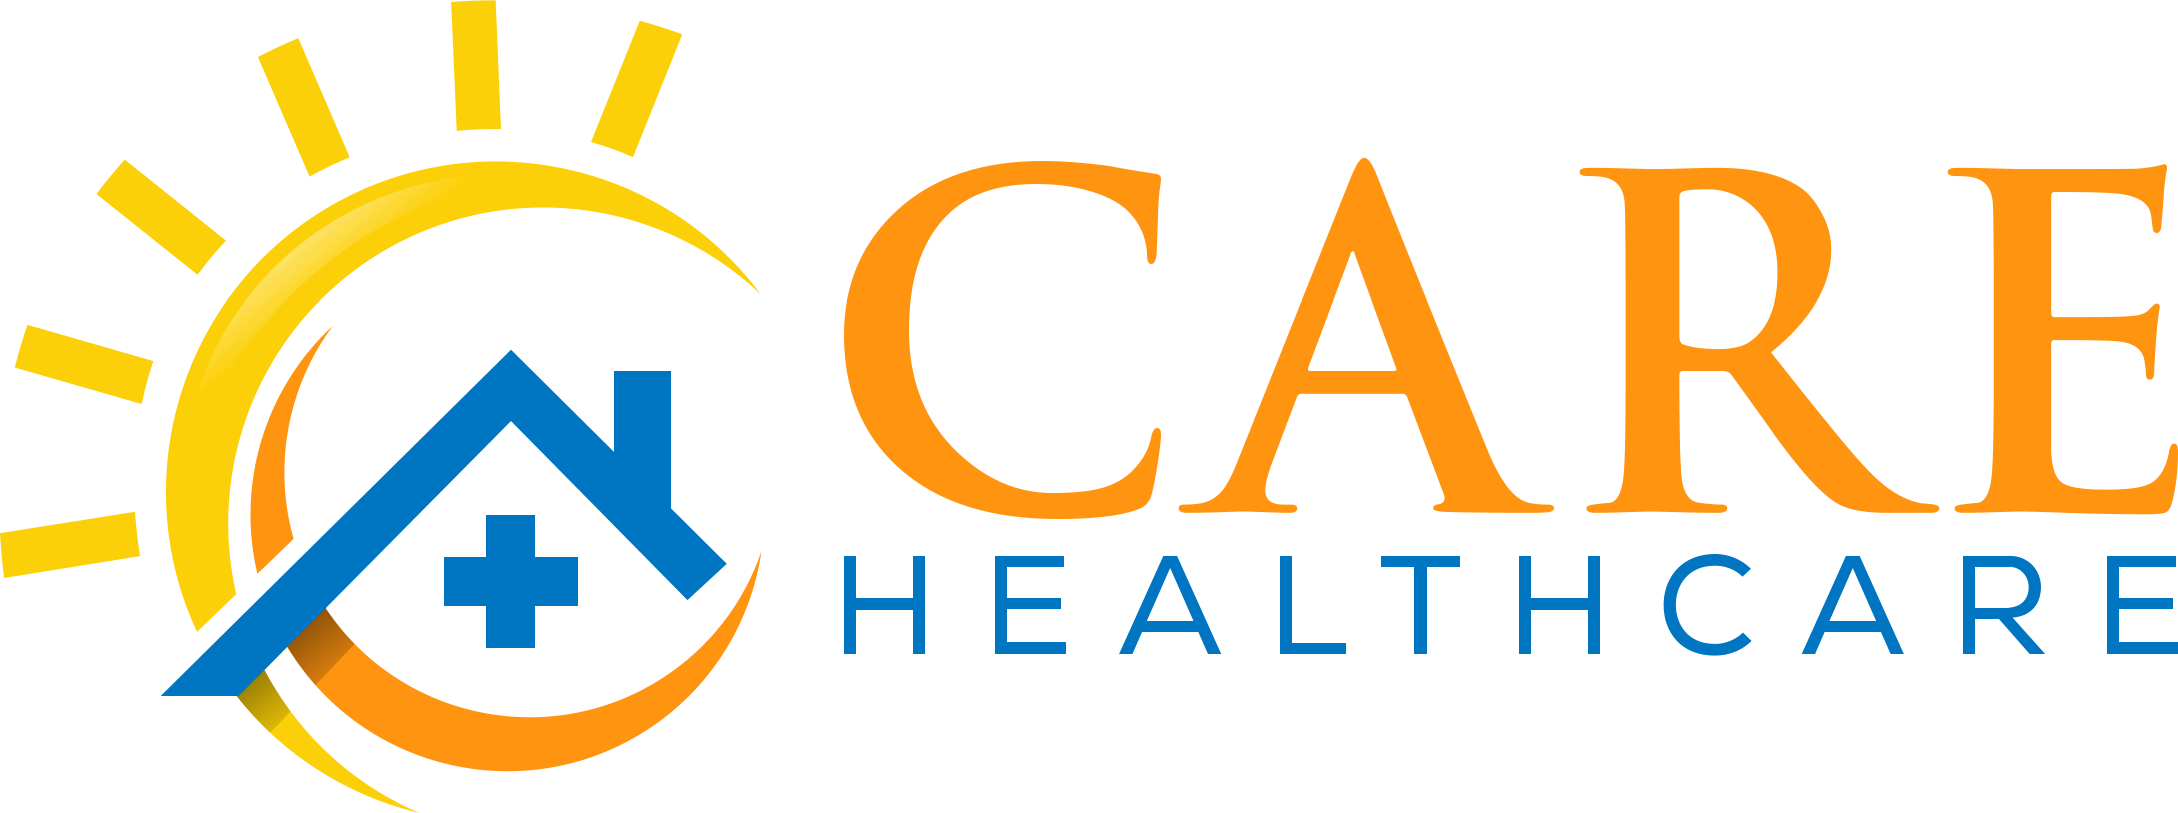 CARE HEALTHCARE